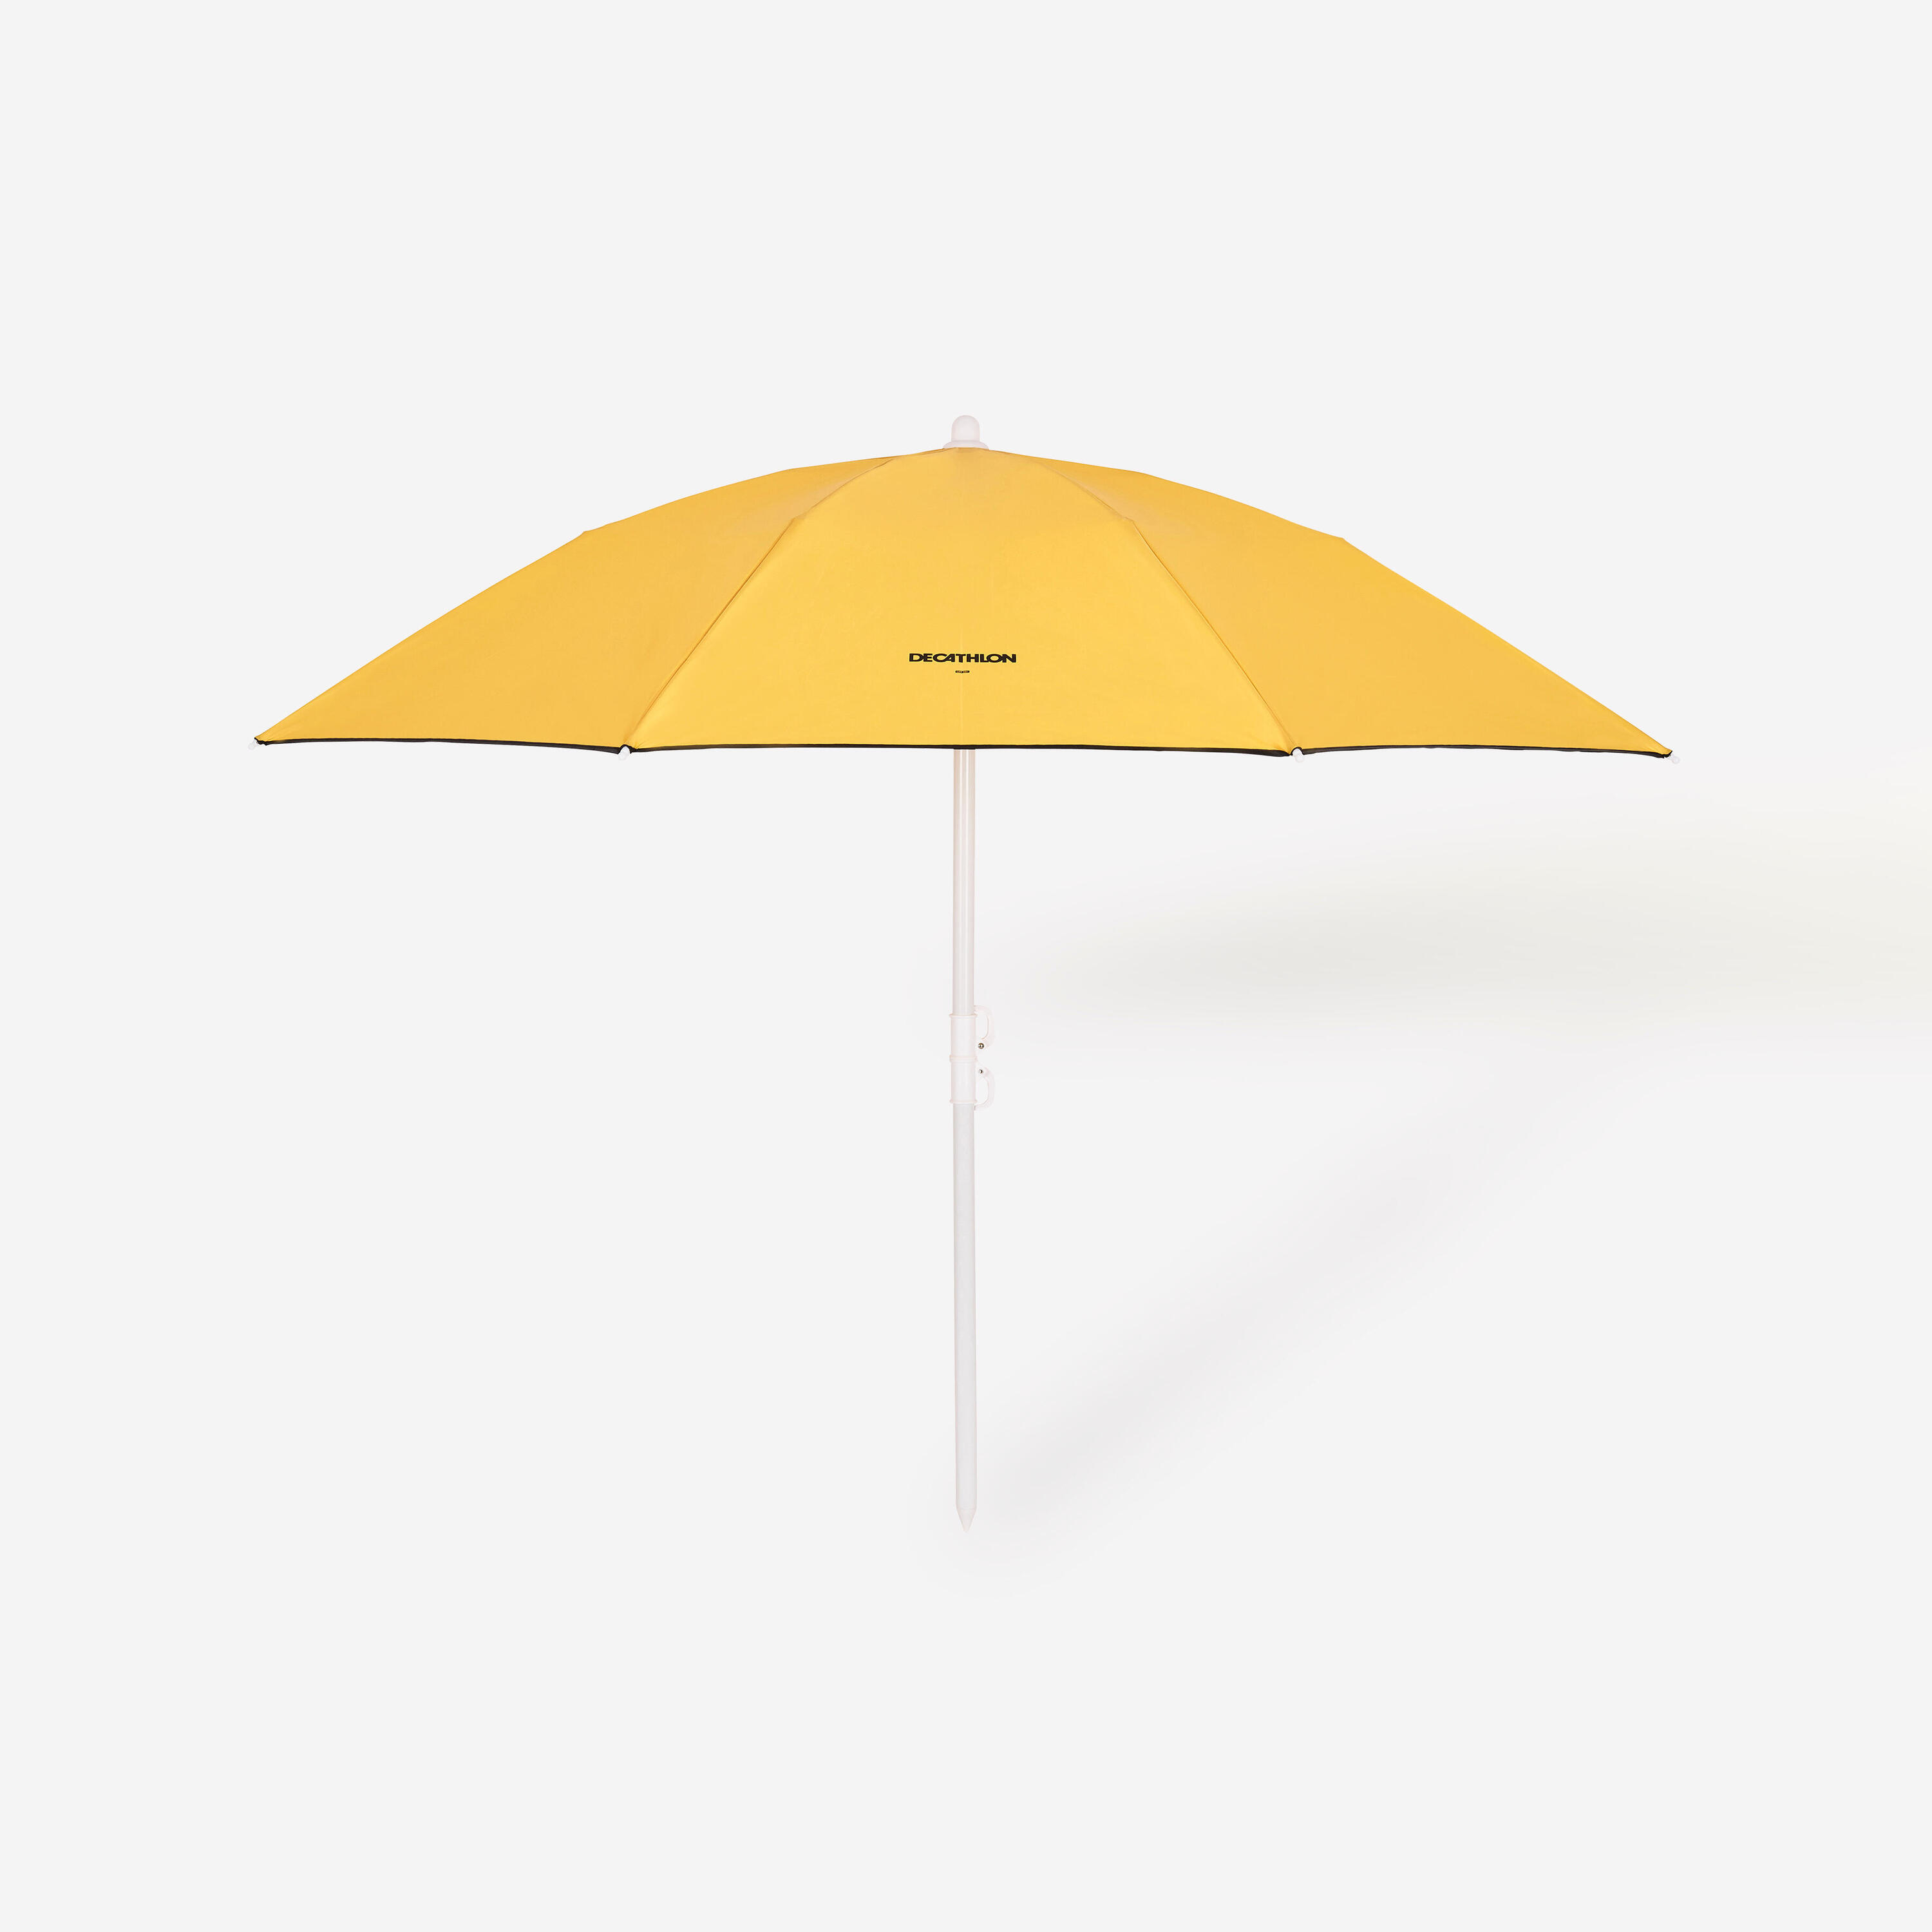 Compact beach umbrella 2 person UPF 50+ - Paruv 160 yellow ochre 8/8